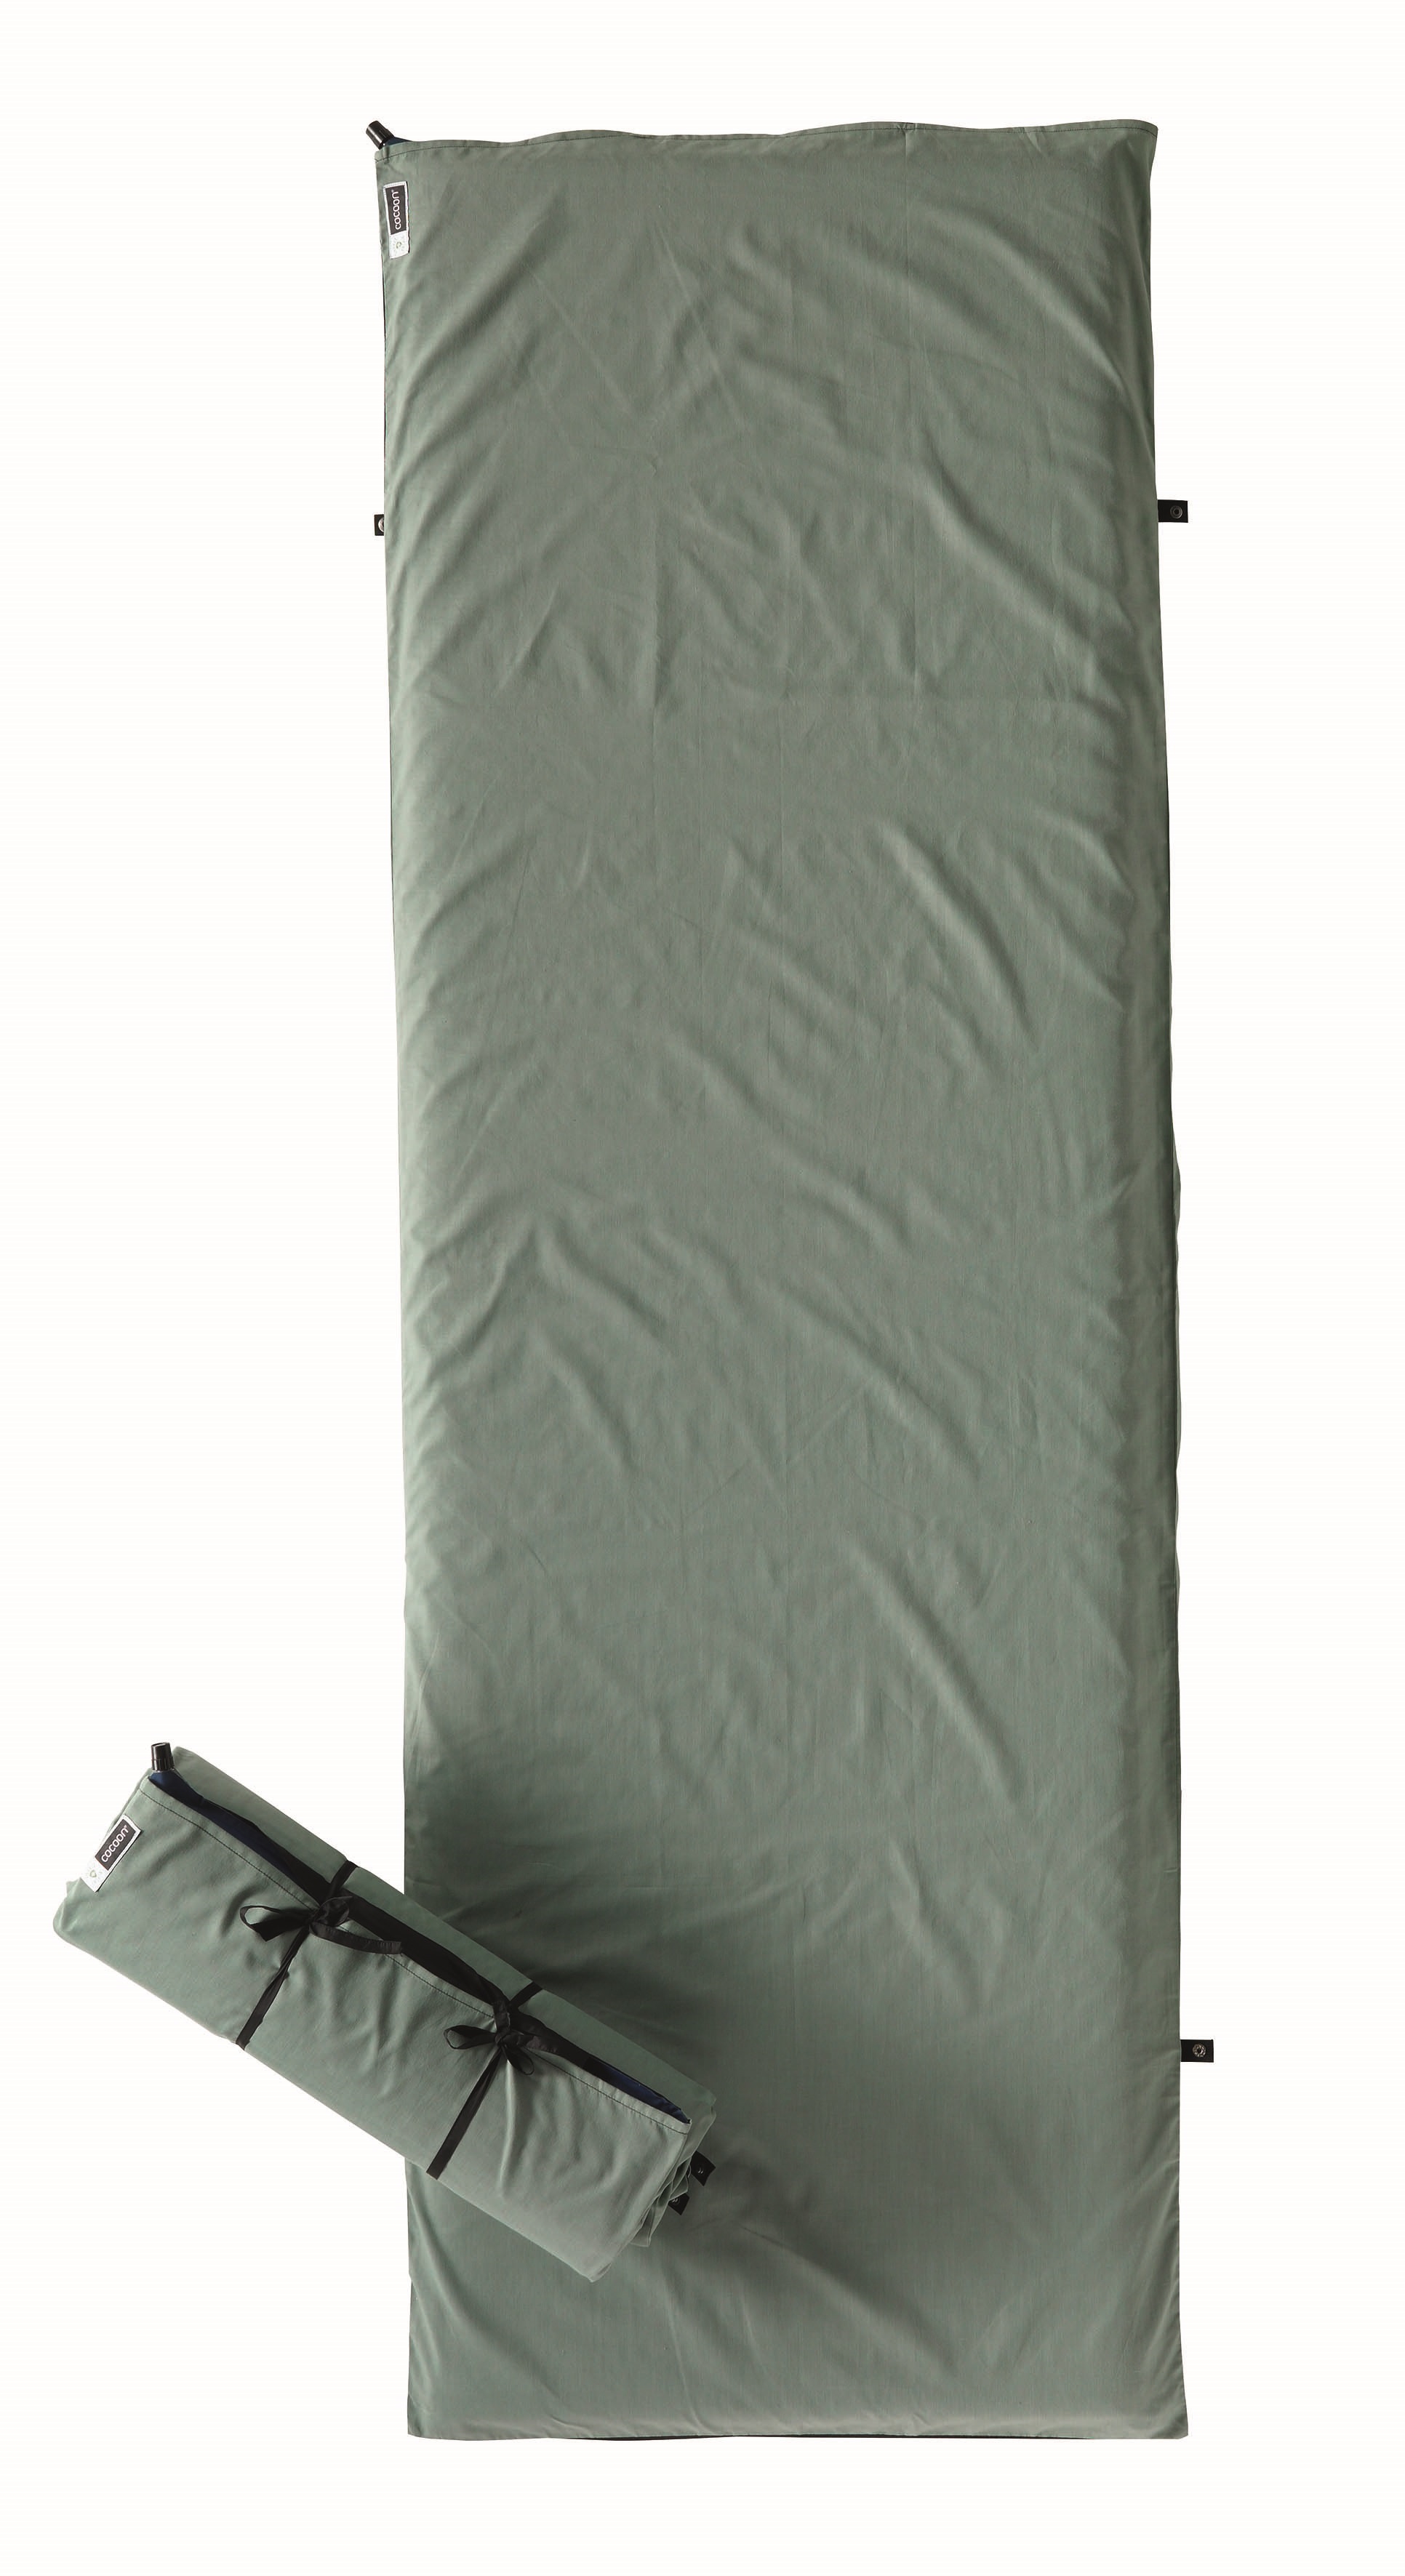 Cocoon voděodolný obal na spací podložku Pad Cover L